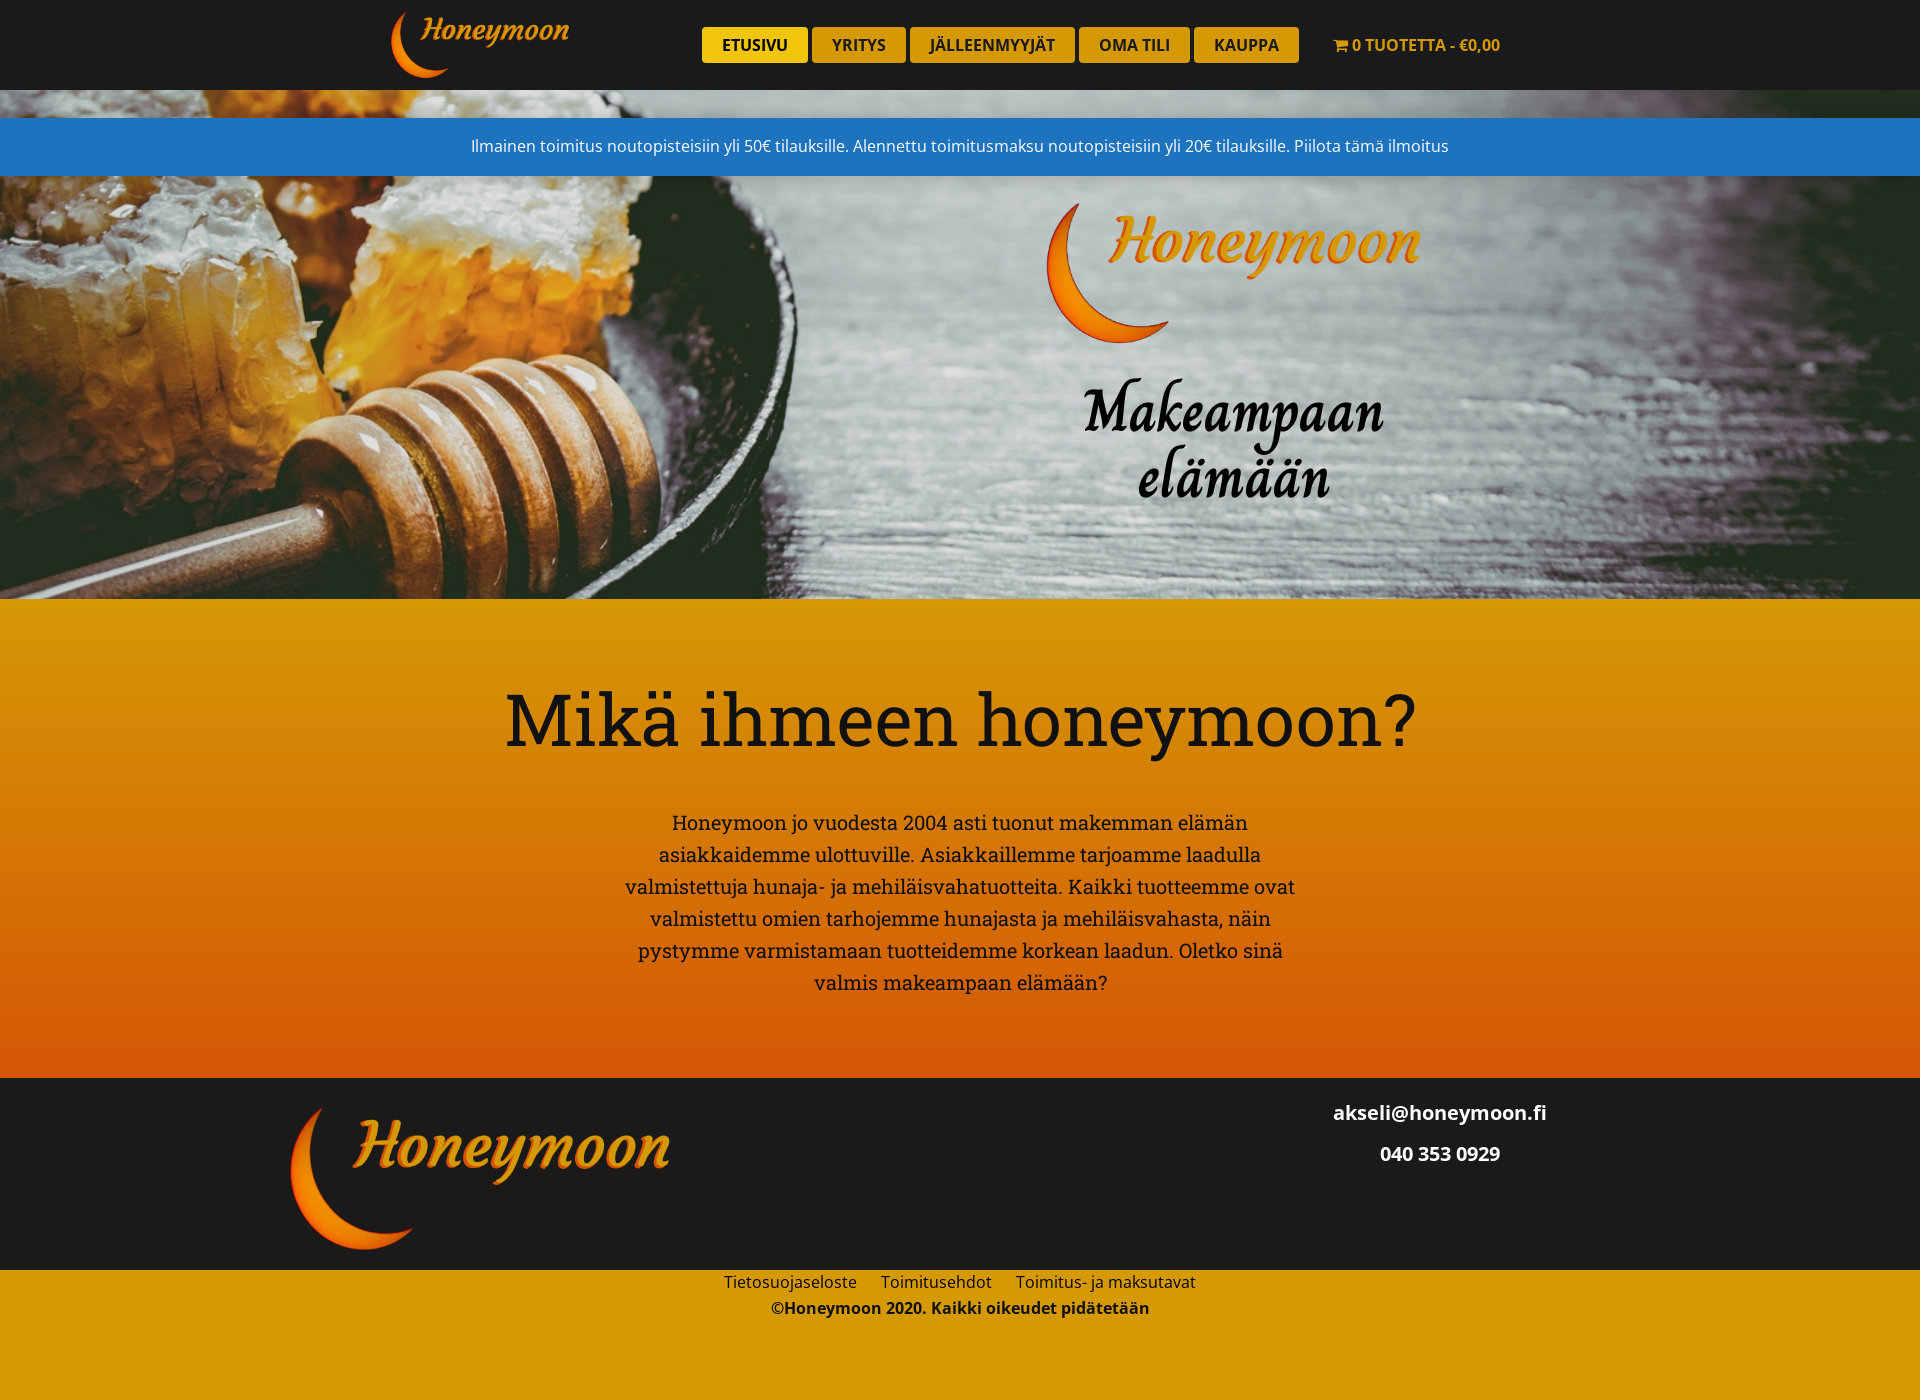 Näyttökuva honeymoon.fi